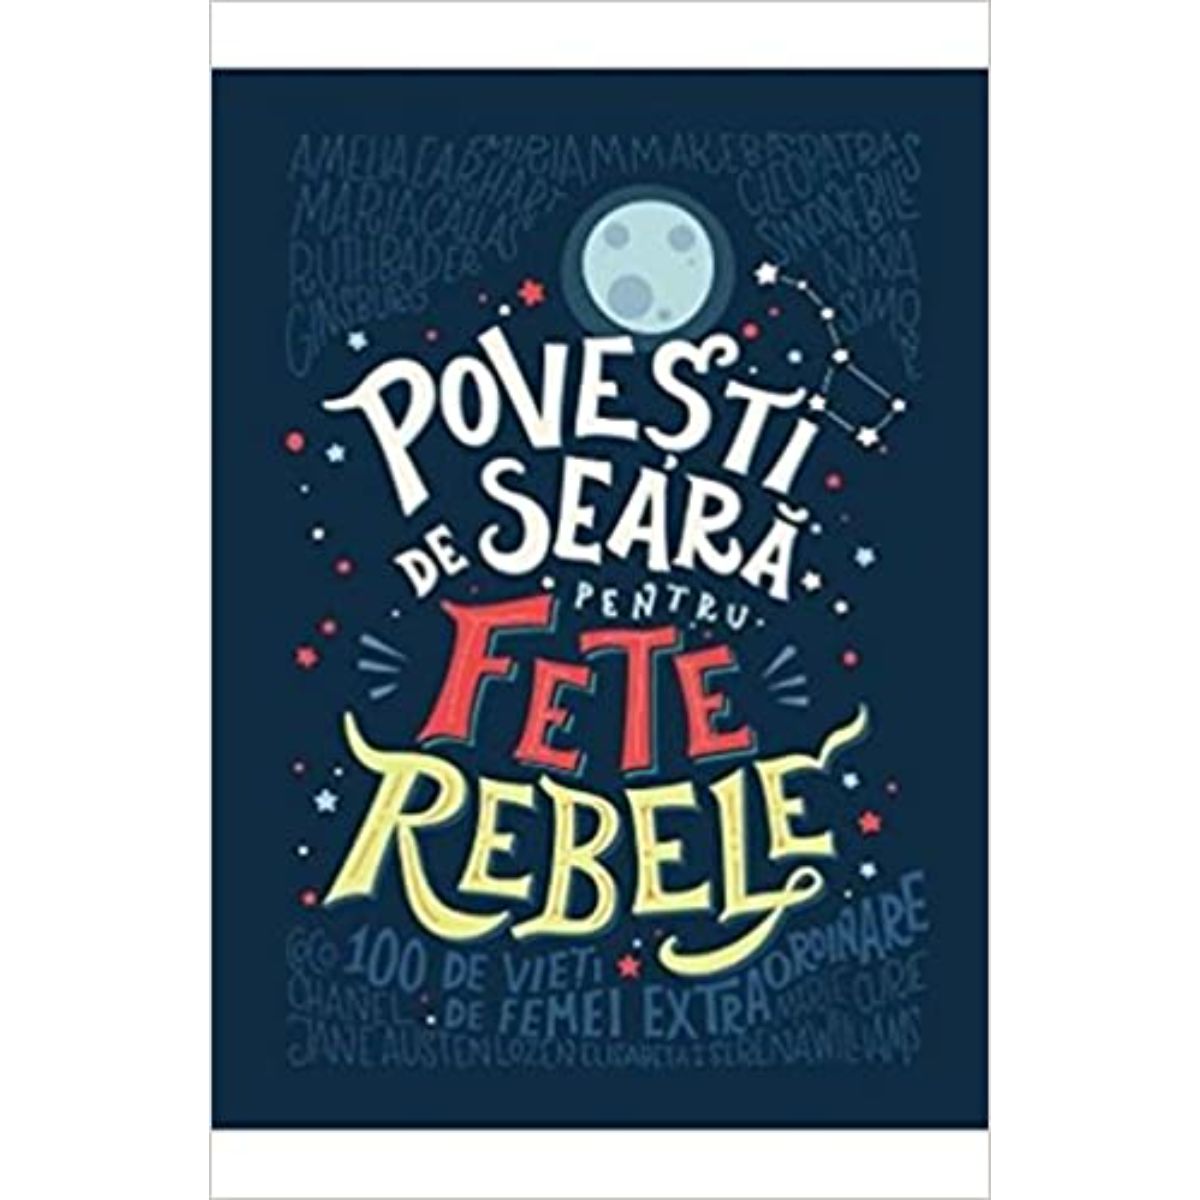 Povesti de seara pentru fete rebele, Elena Favilli, Francesca Cavallo